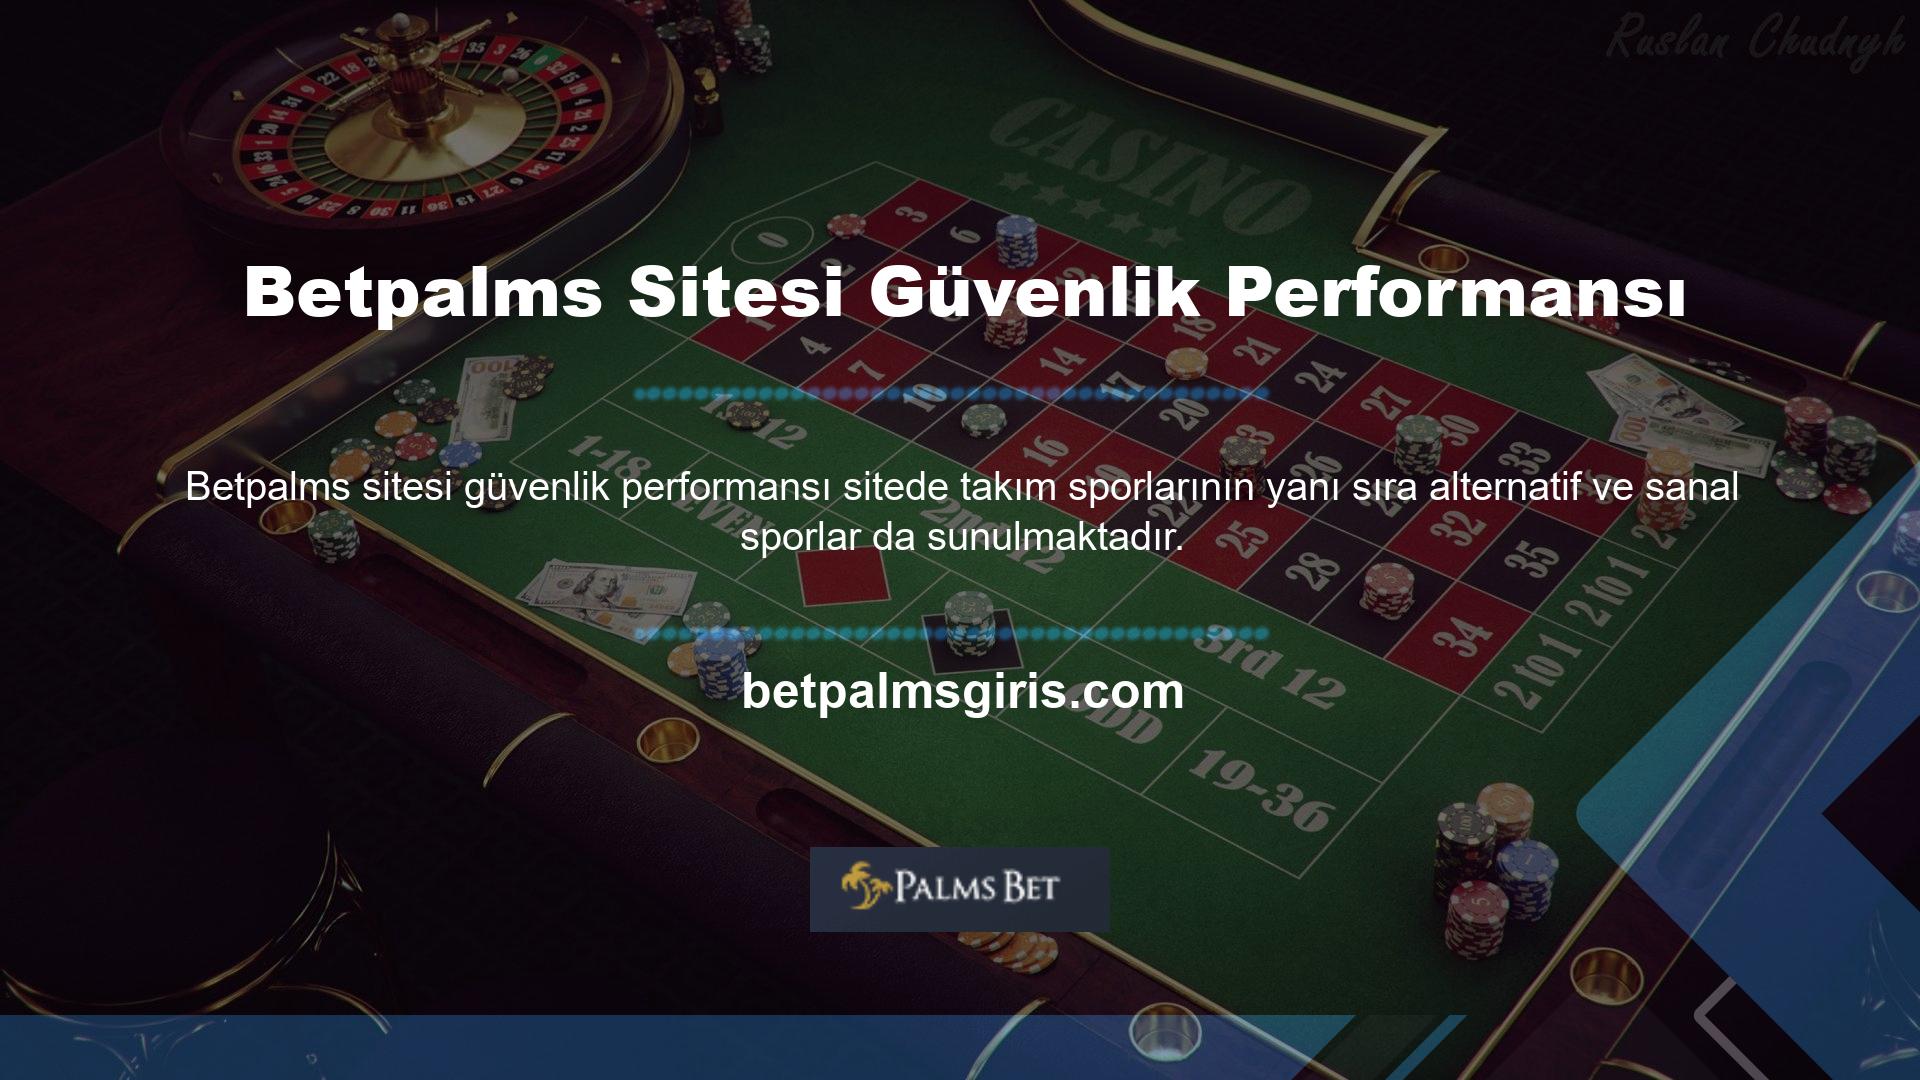 Betpalms web sitesi güvenlik performansı Casino ayrıca poker, rulet ve blackjack gibi oyunlar da sunmaktadır